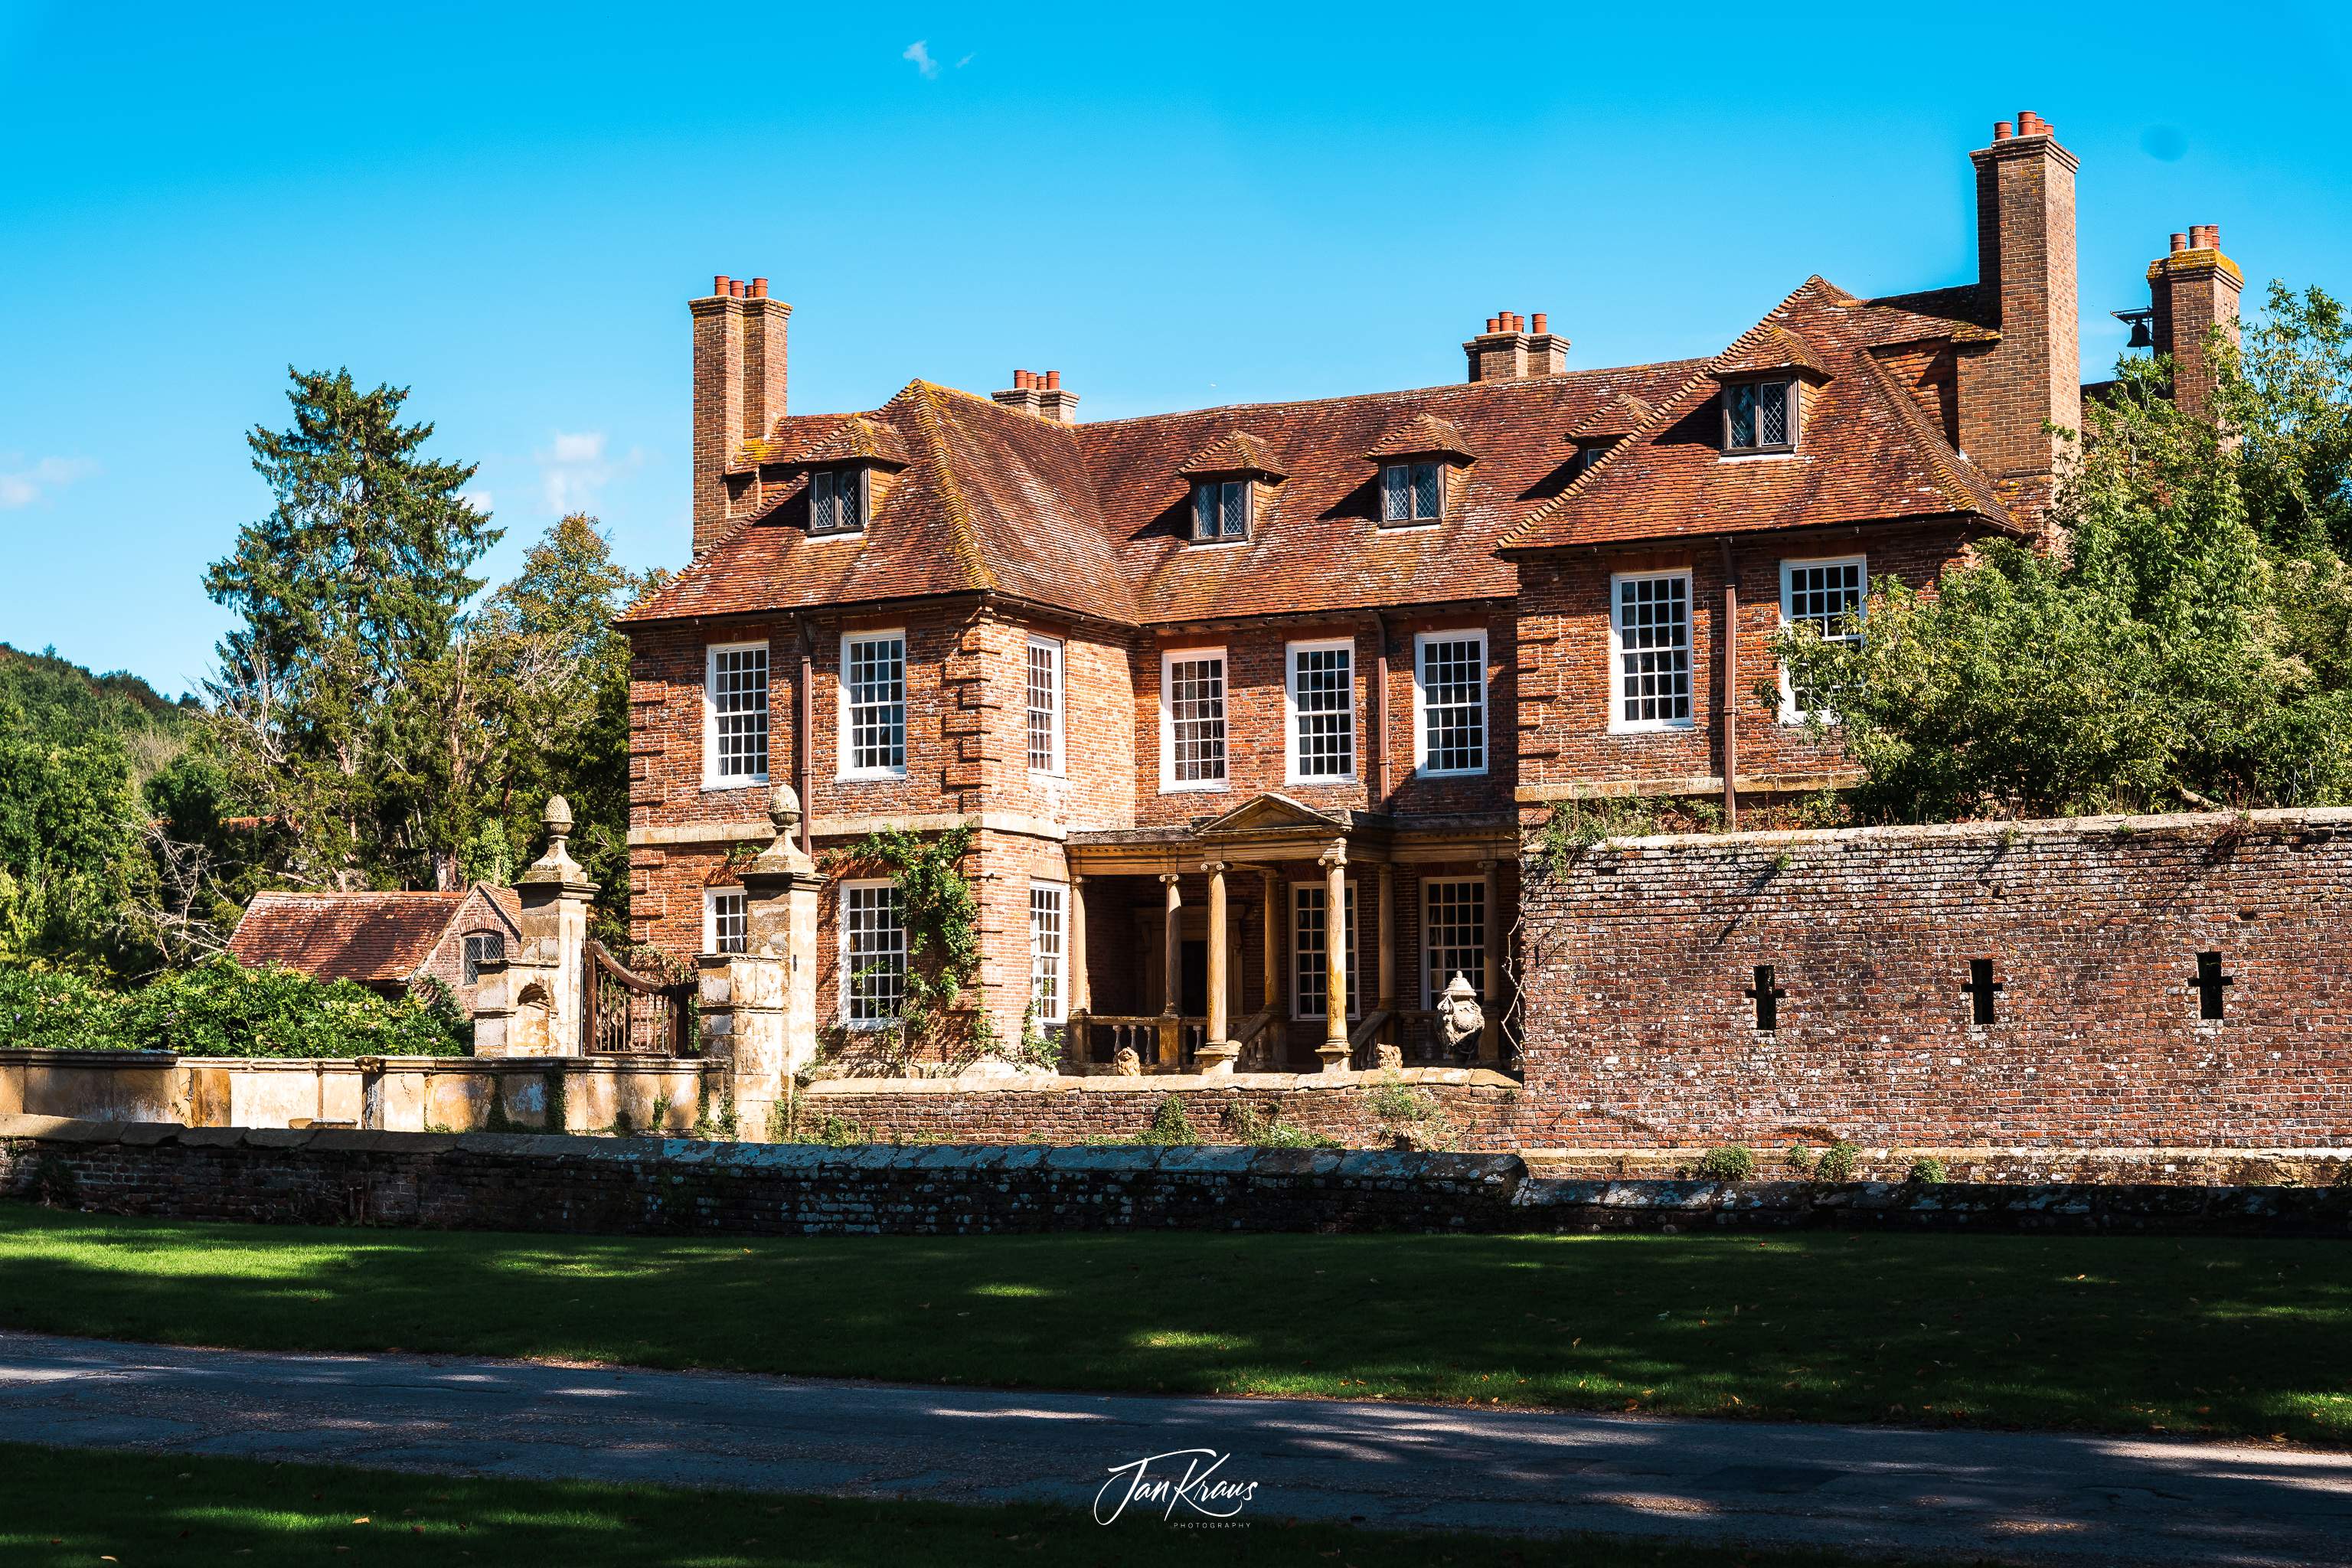 Groombridge Place manor, Kent, England, UK